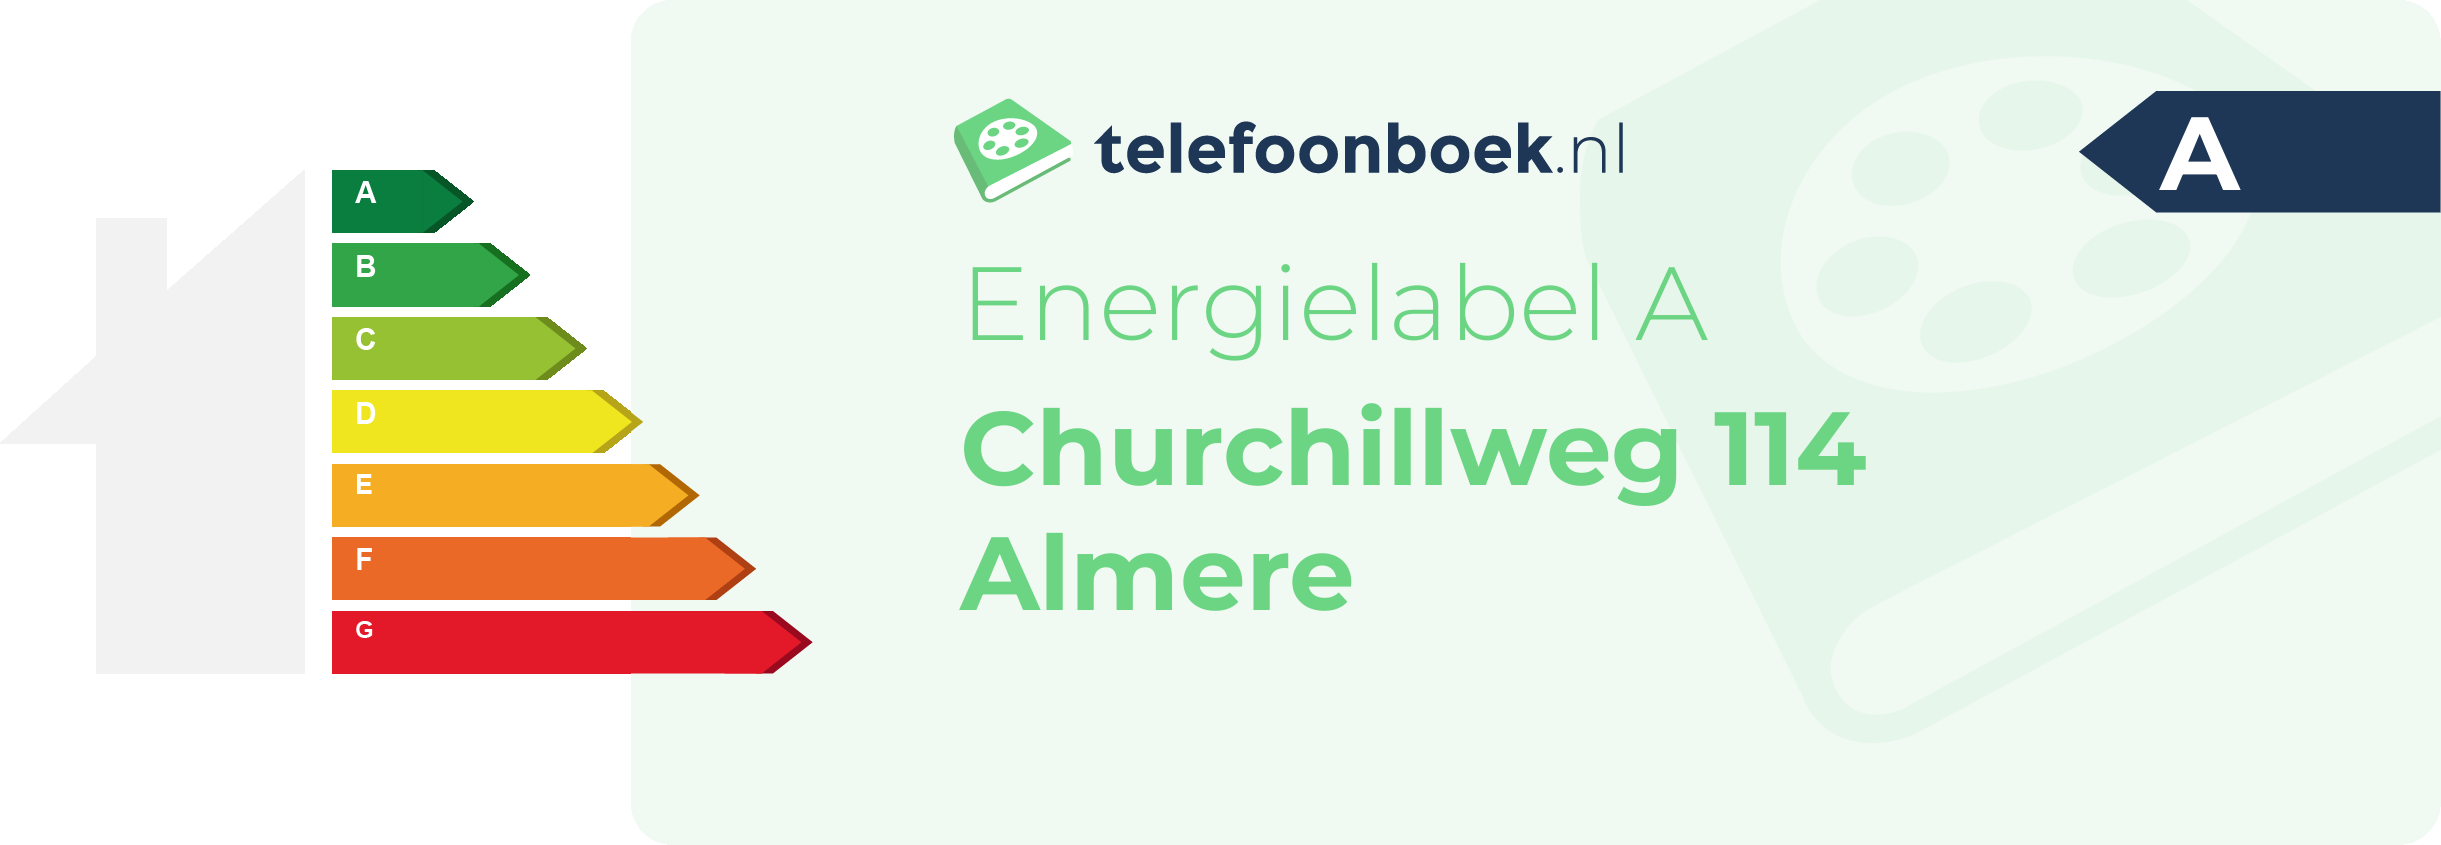 Energielabel Churchillweg 114 Almere